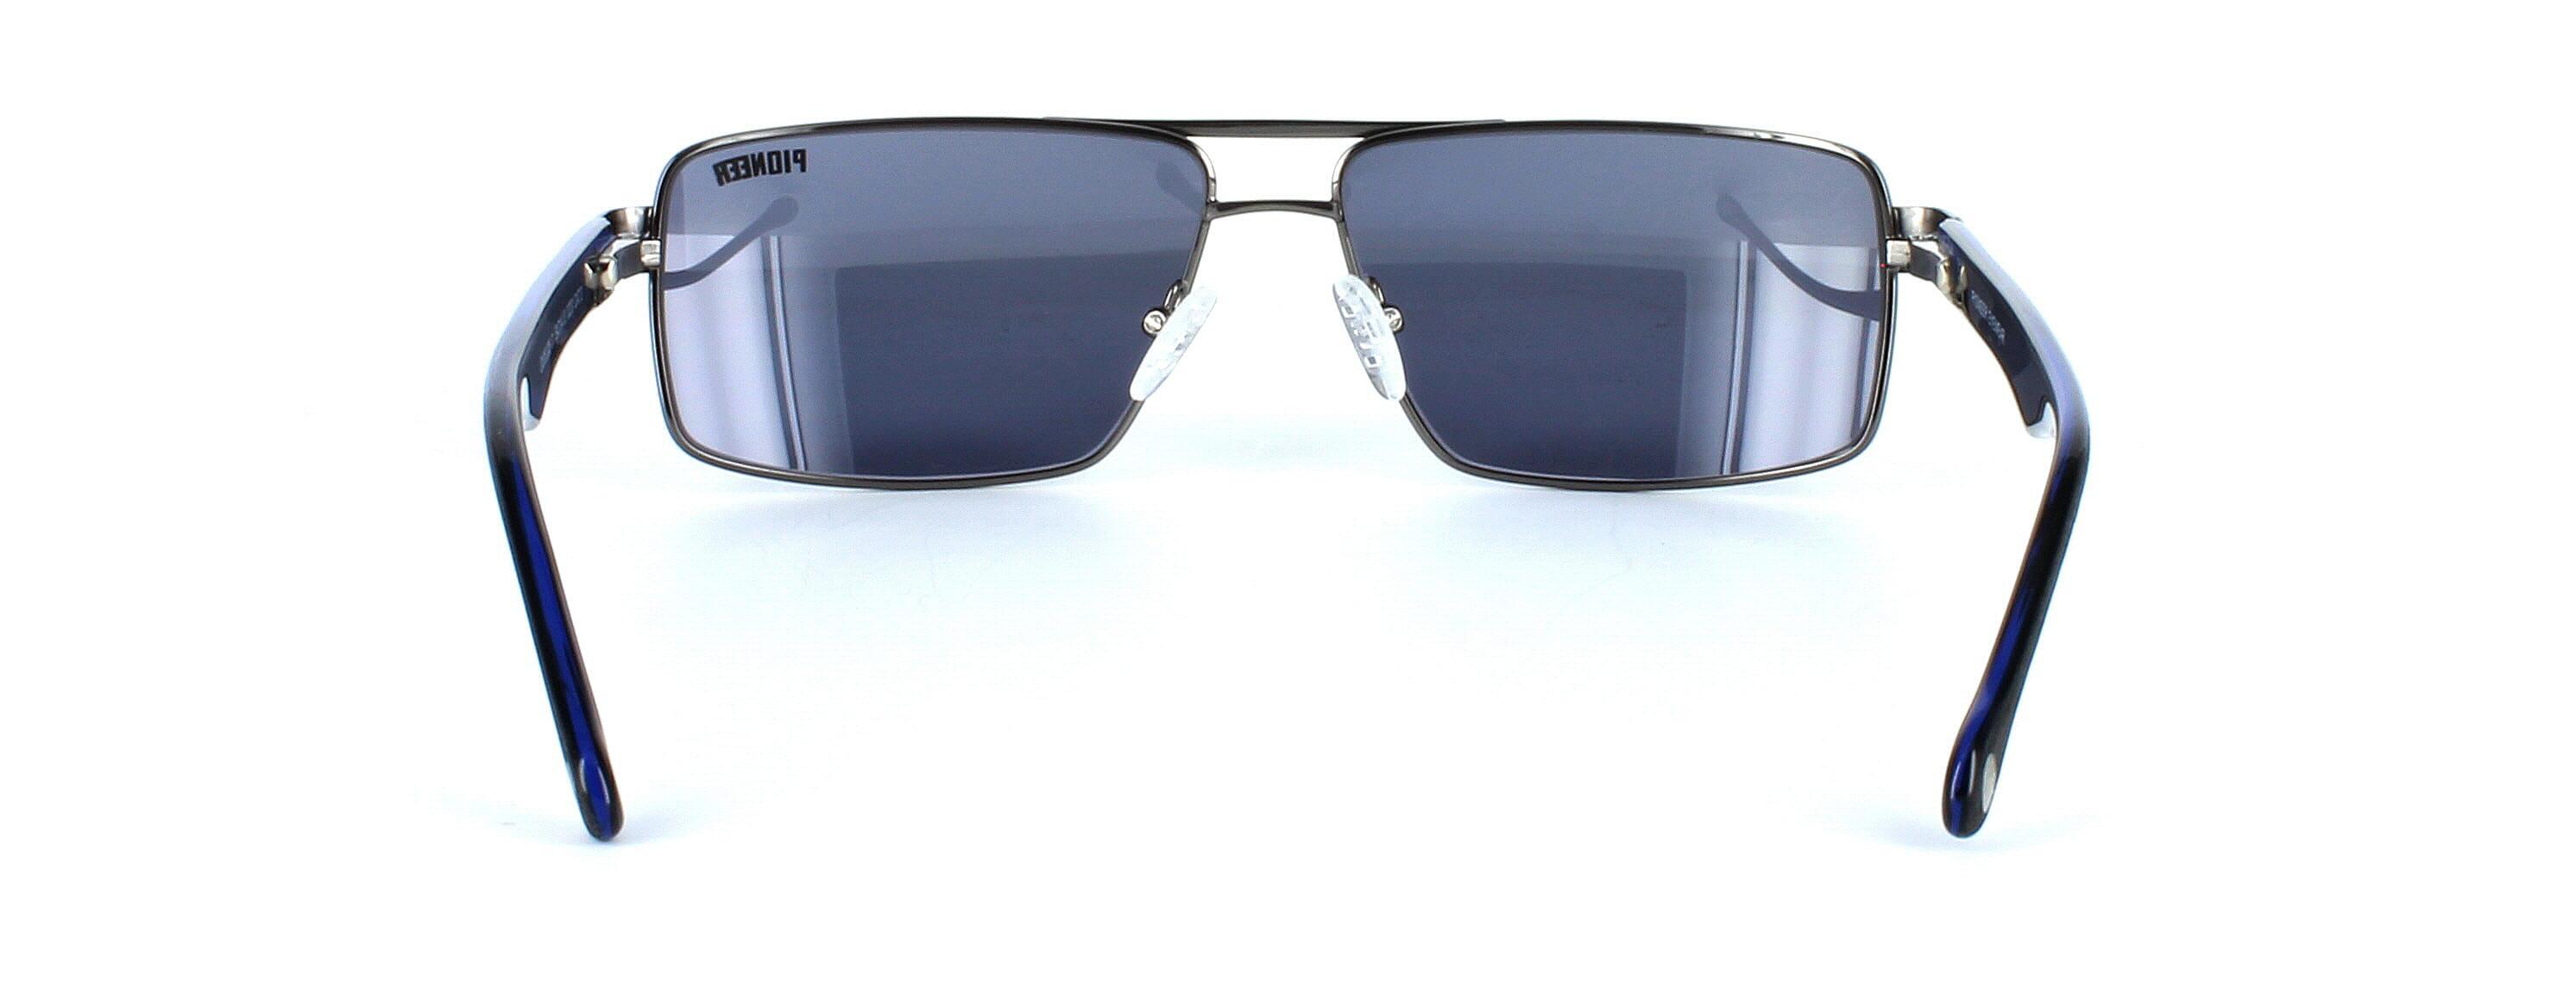 Odonata - Unisex aviator style prescription sunglasses in gunmetal - image view 3